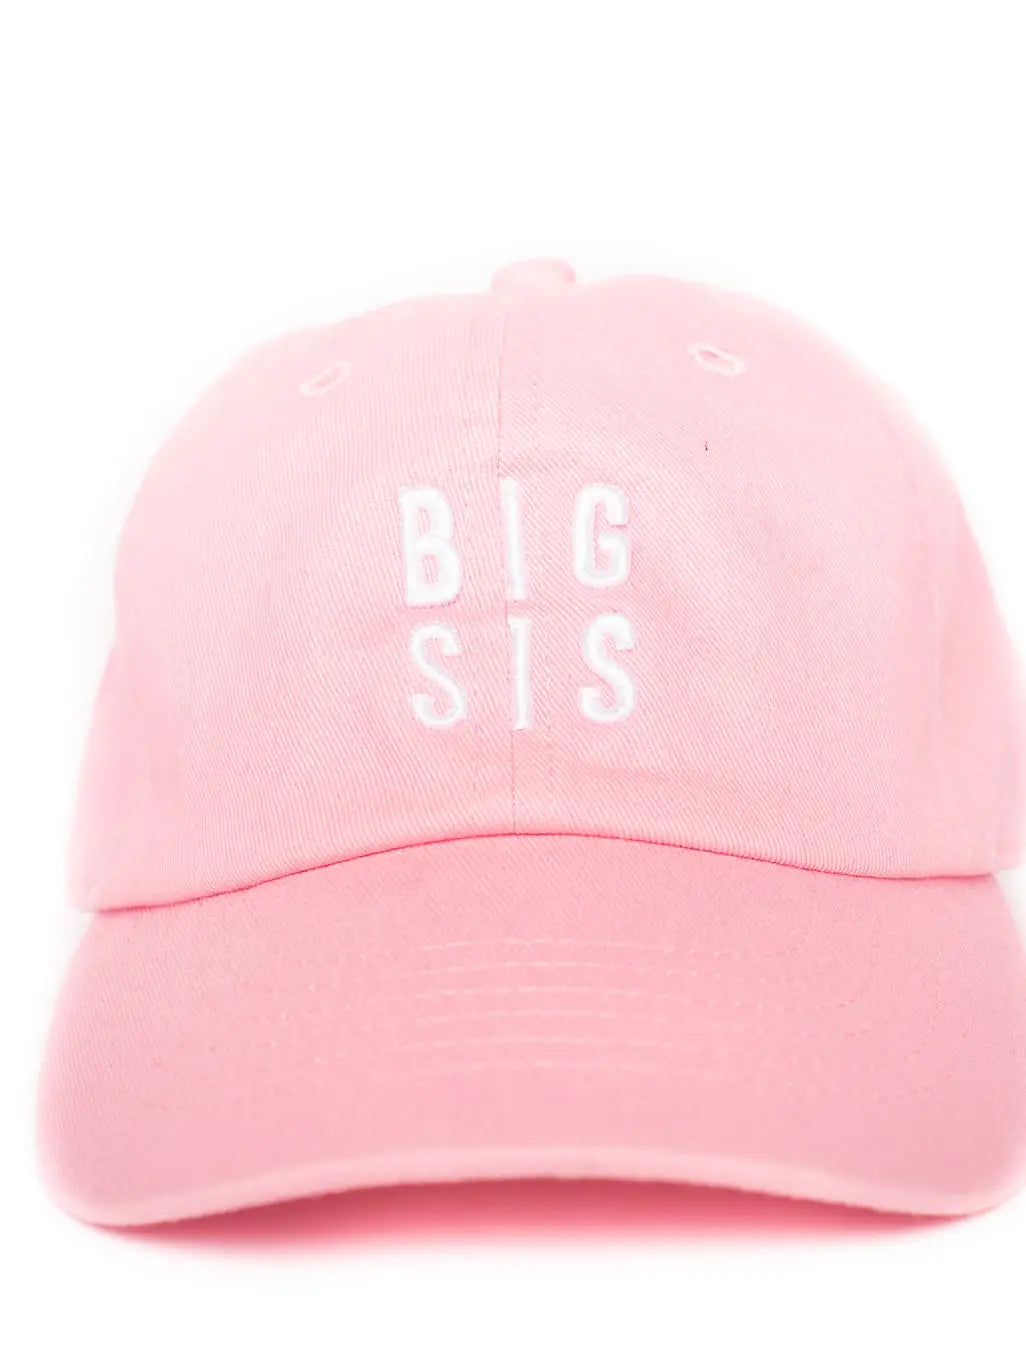 Rey to Z Big Sis Hat, Light Pink |Mockingbird Baby & Kids